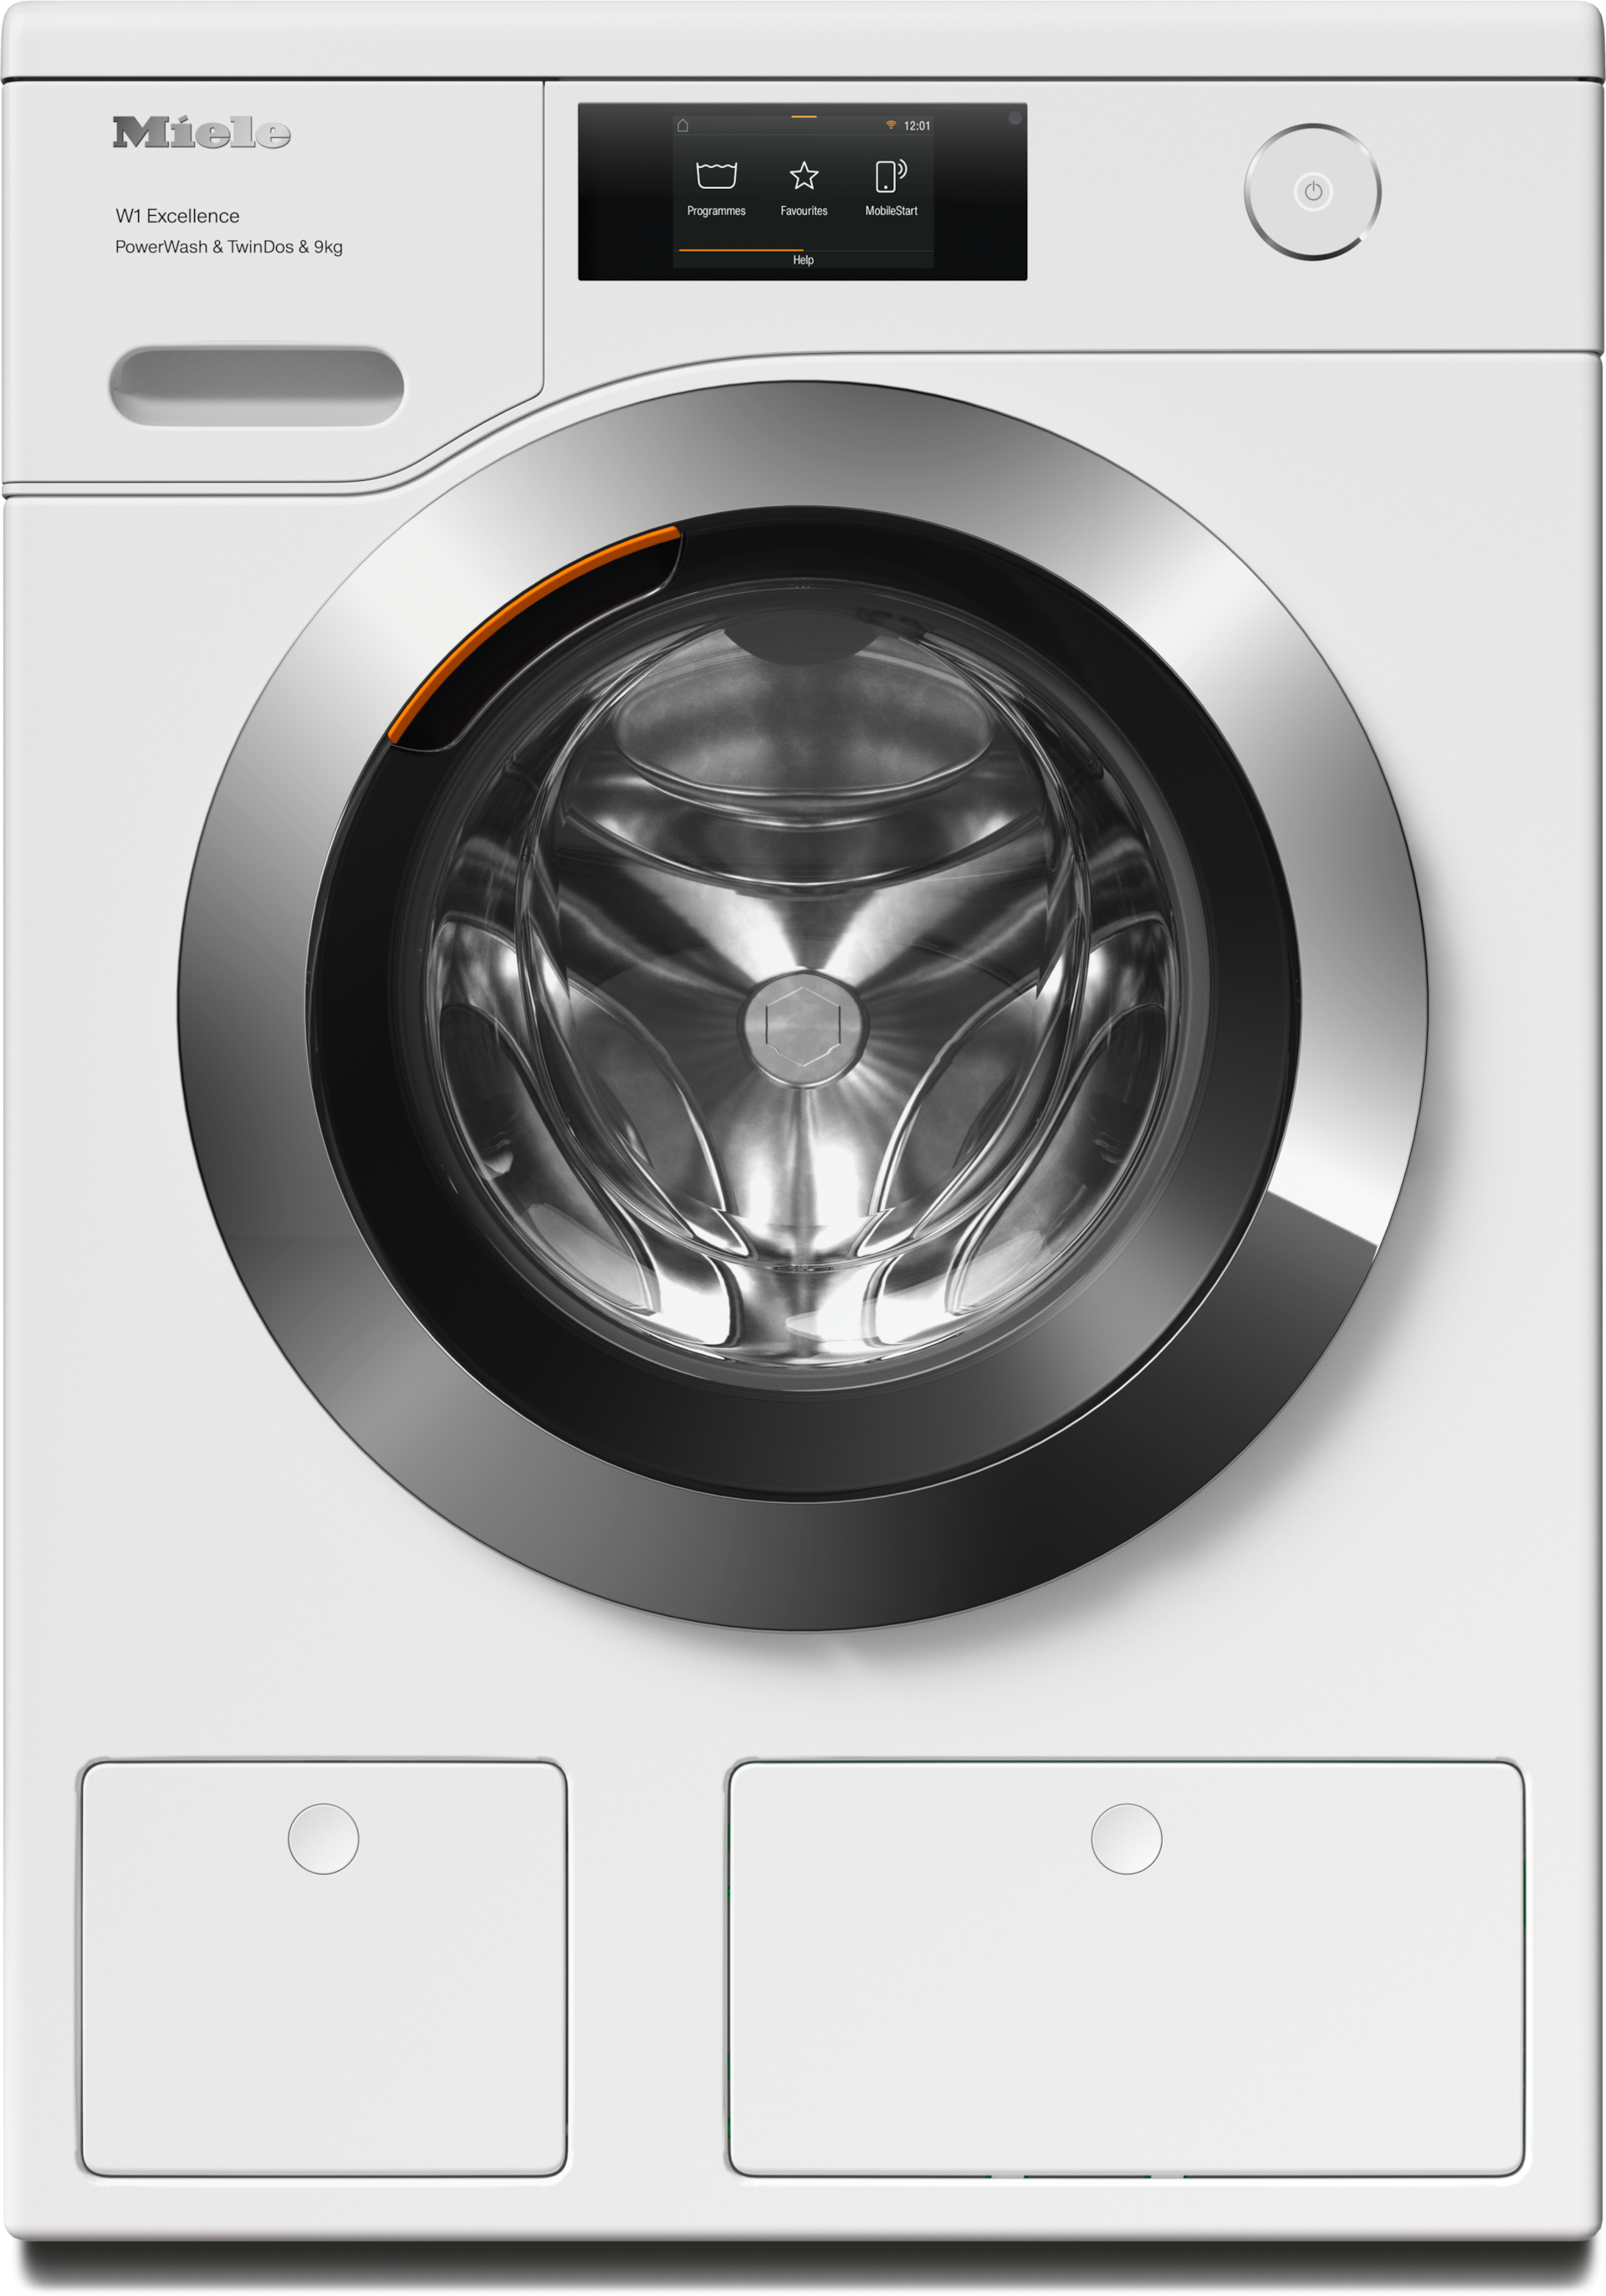 Washing machines - WER865 WPS PWash&TDos&9kg Lotus white - 1